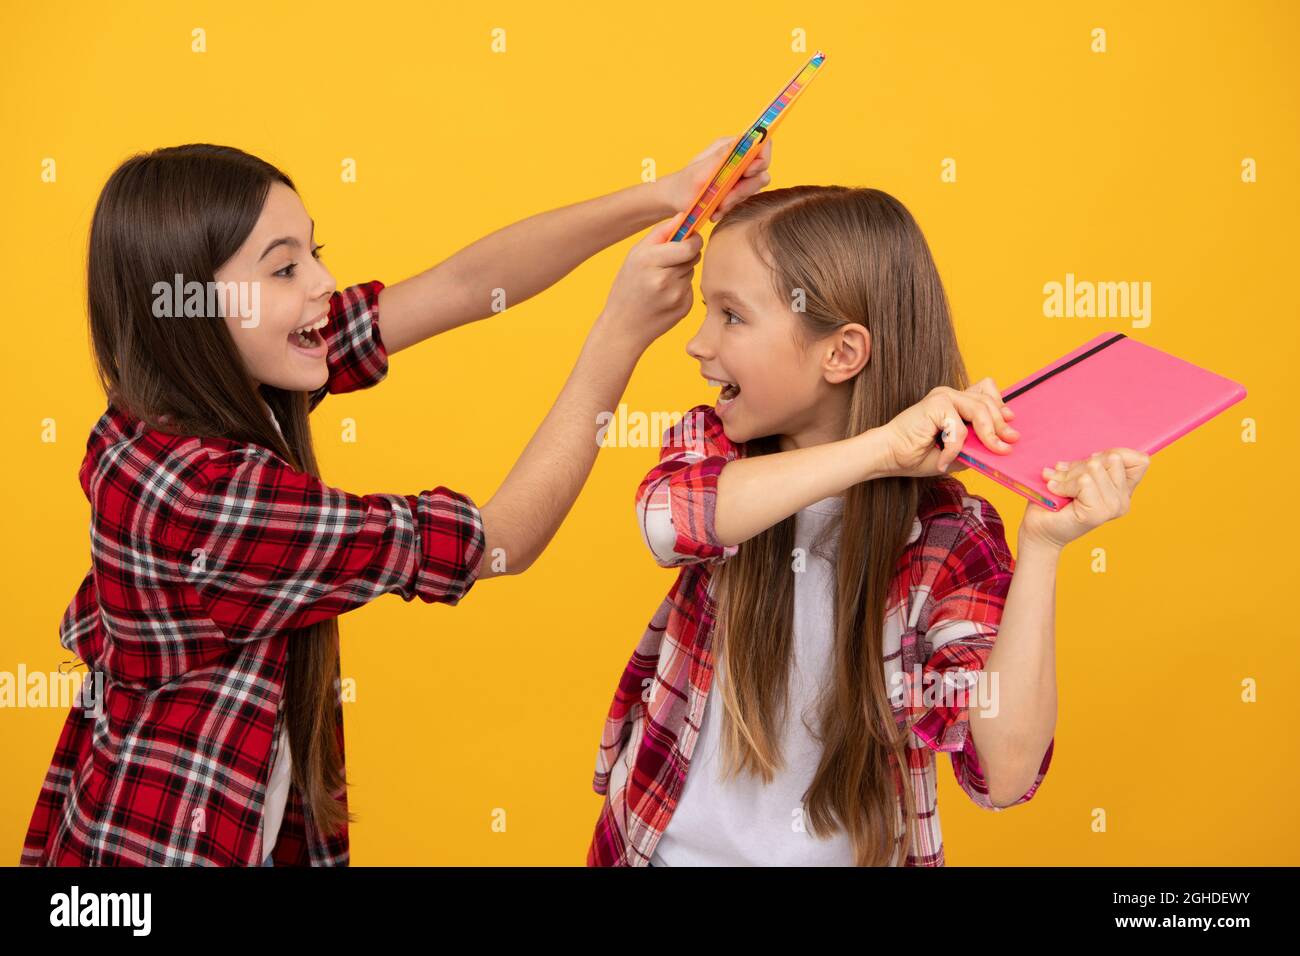 des filles de l'adolescence heureux dans le jeu de chemise à carreaux avec des cahiers, des émotions positives Banque D'Images